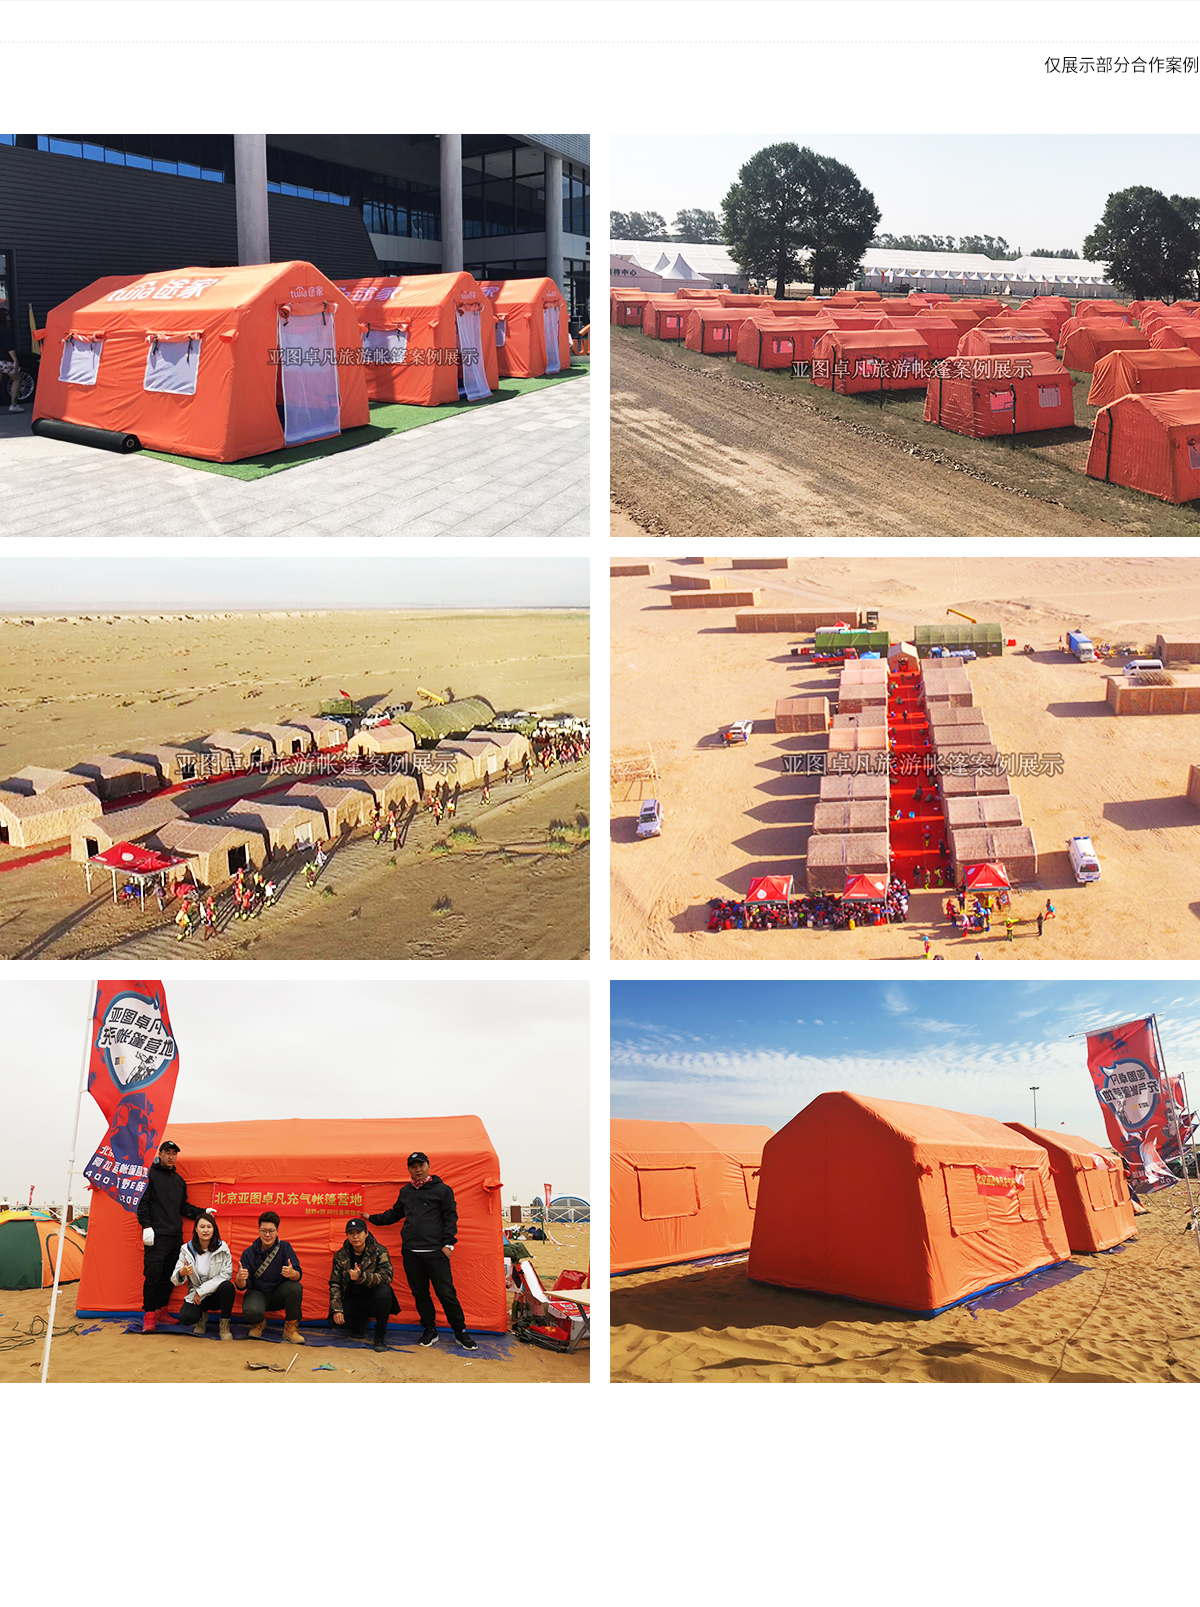 充气拱门|充气帐篷图片|充气帐篷价格|充气帐篷制作|长沙天霸帐篷 - 天霸帐篷 就是耐用